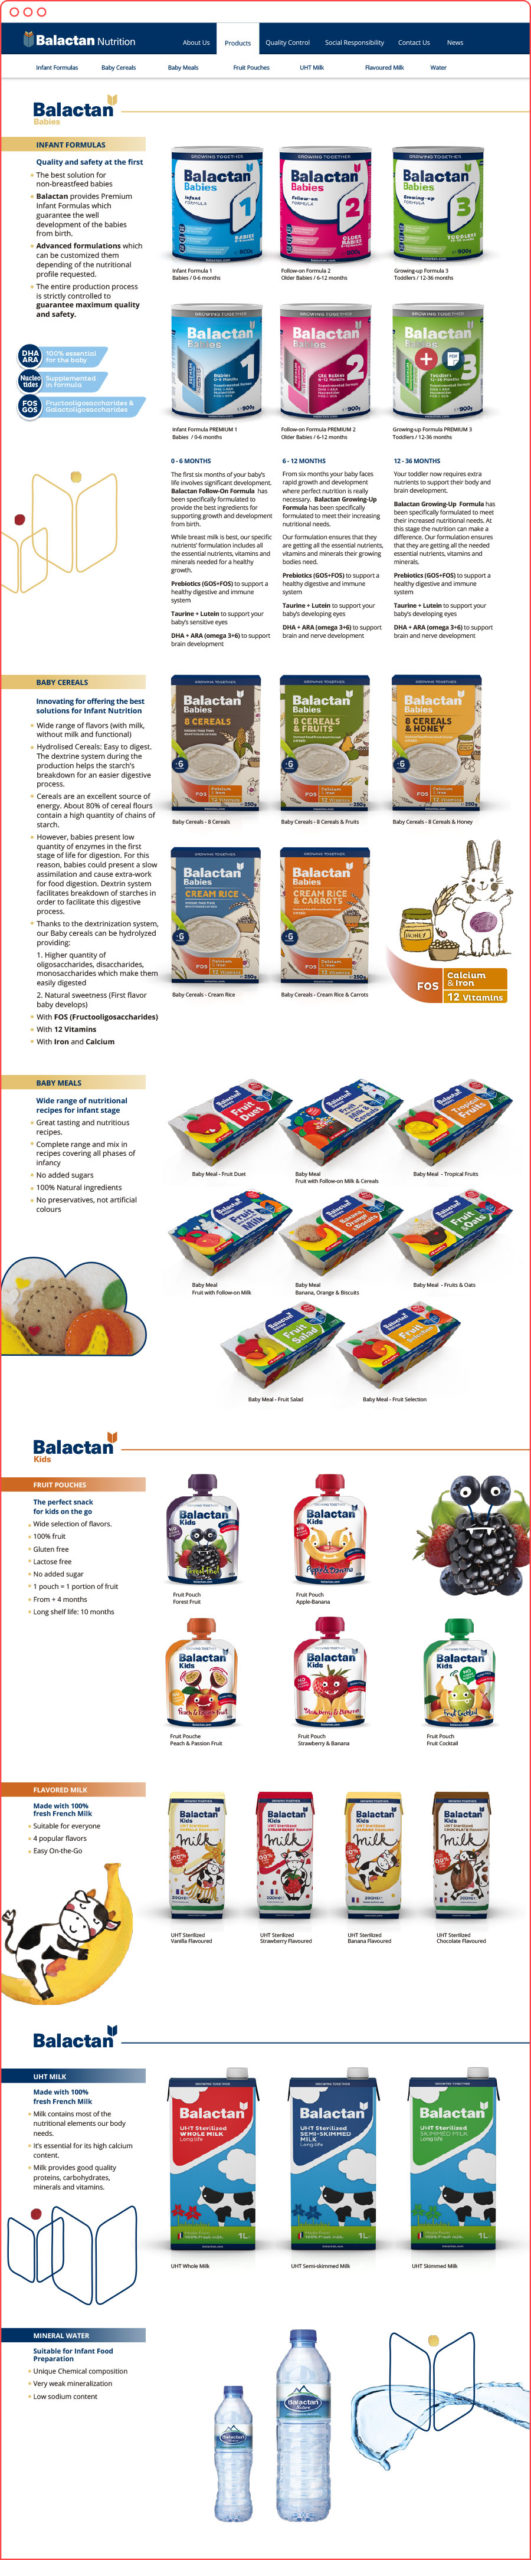 branding y packaging_alimentación infantil_diseño web_Balactan